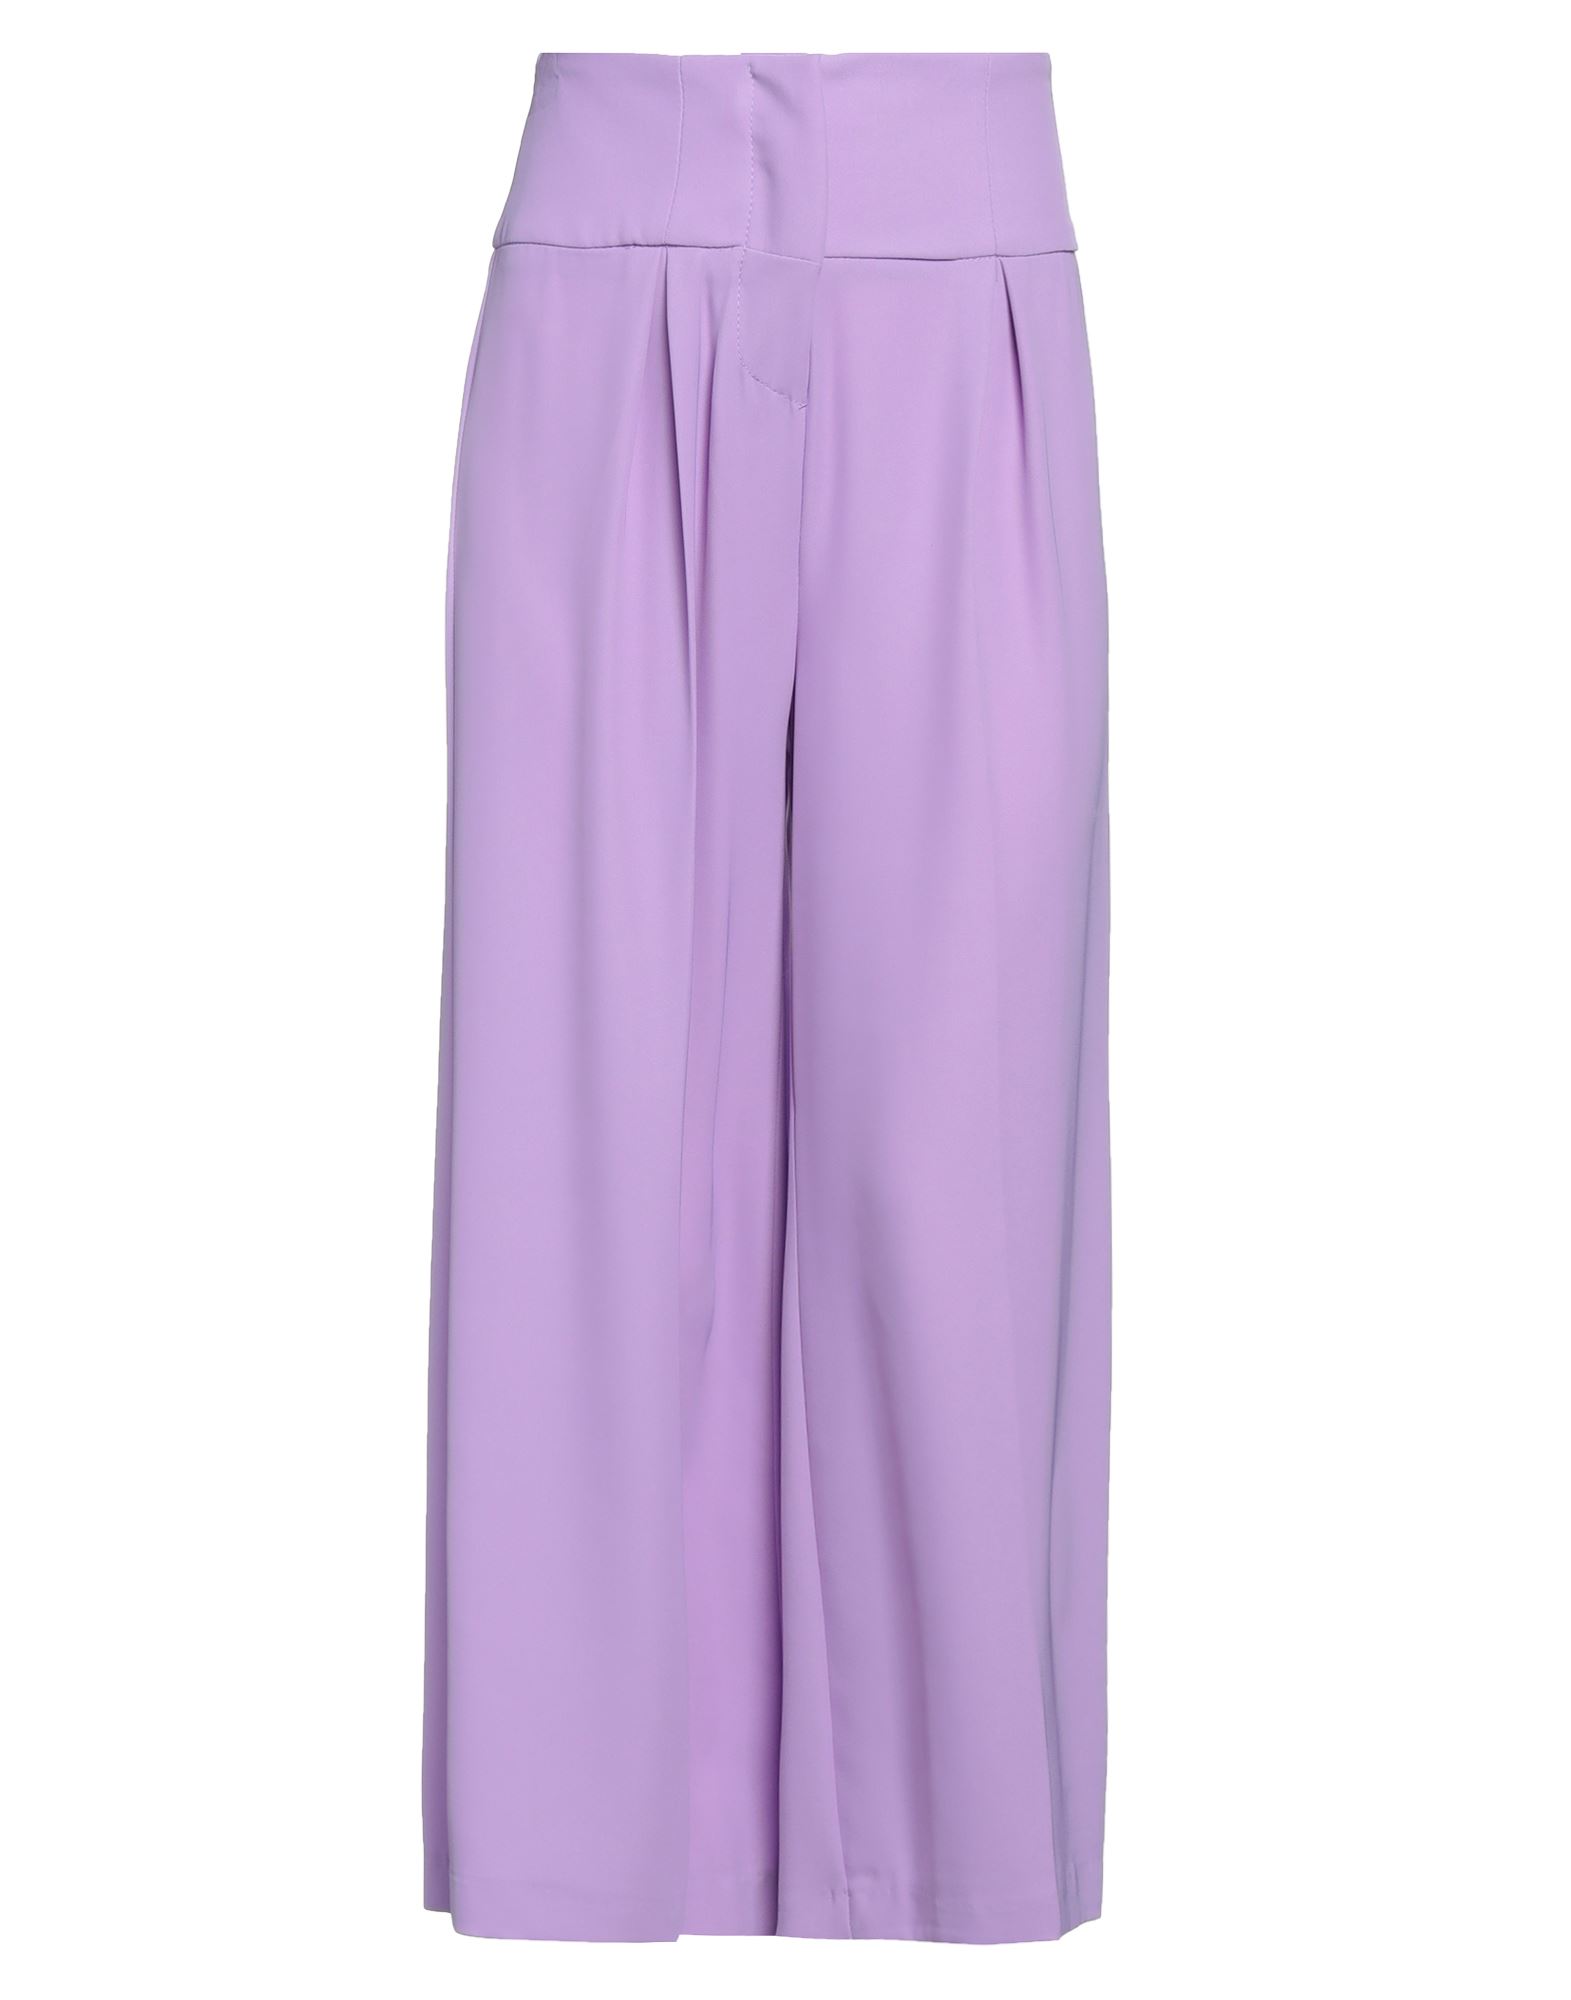 Shop Twenty Easy By Kaos Woman Pants Light Purple Size 6 Polyester, Elastane